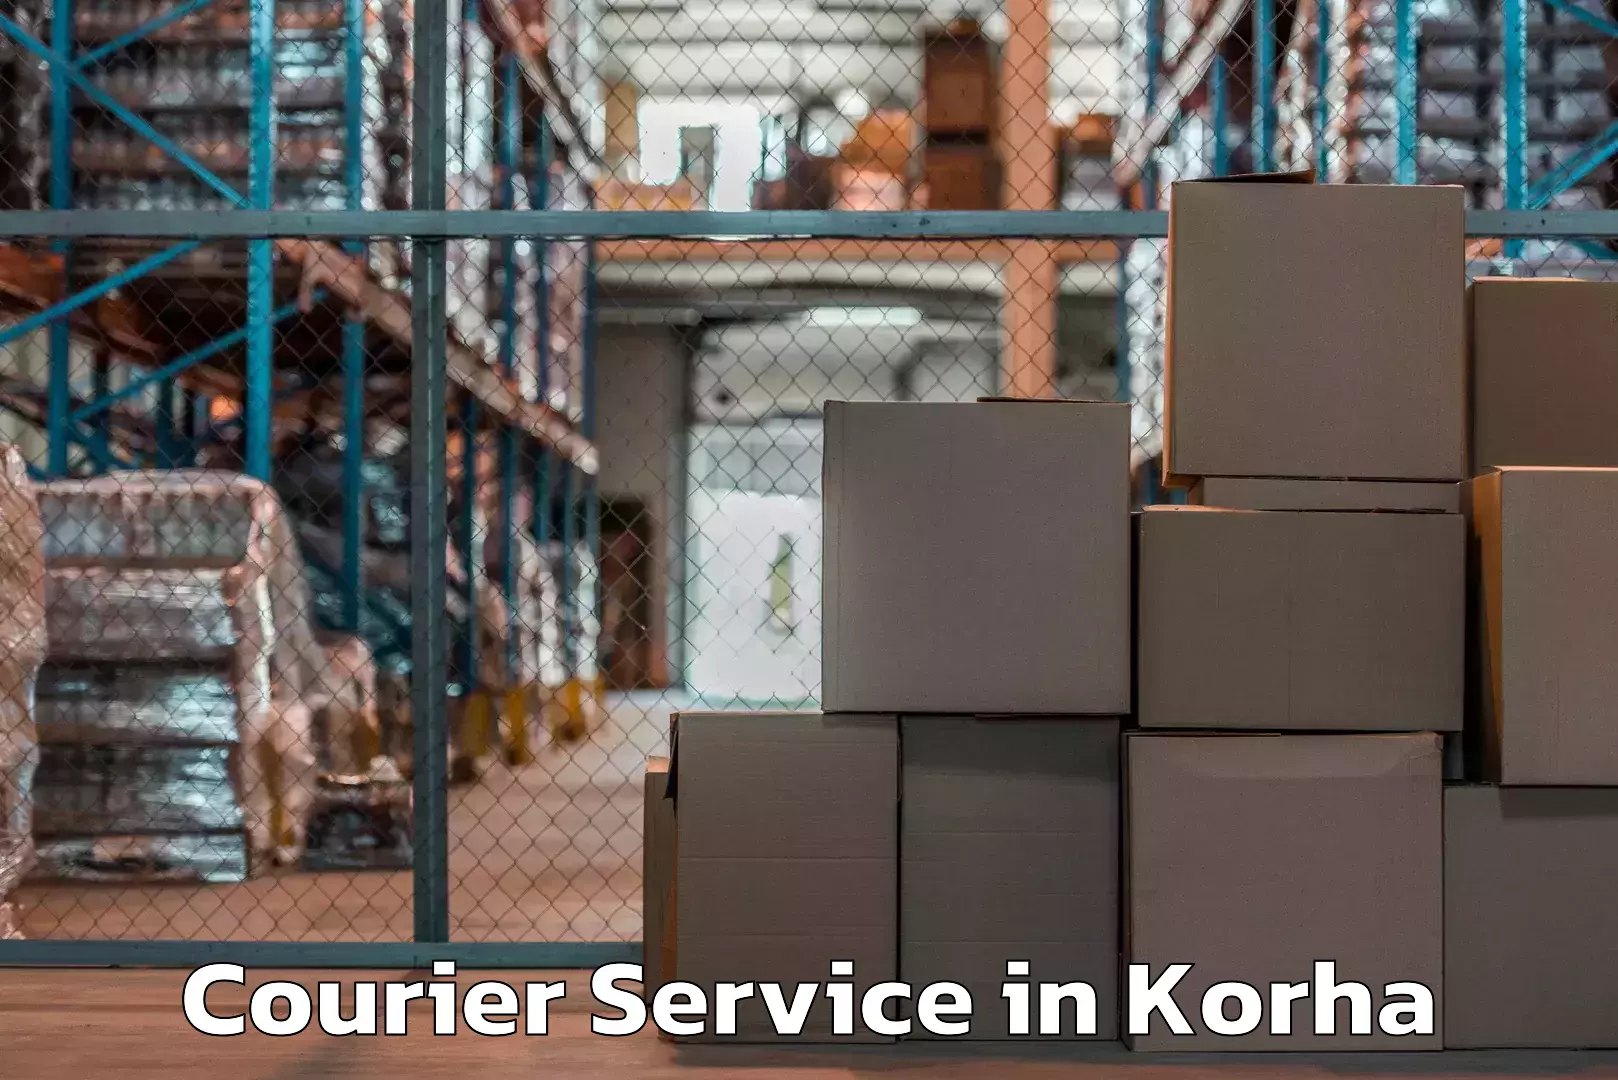 Weekend courier service in Korha